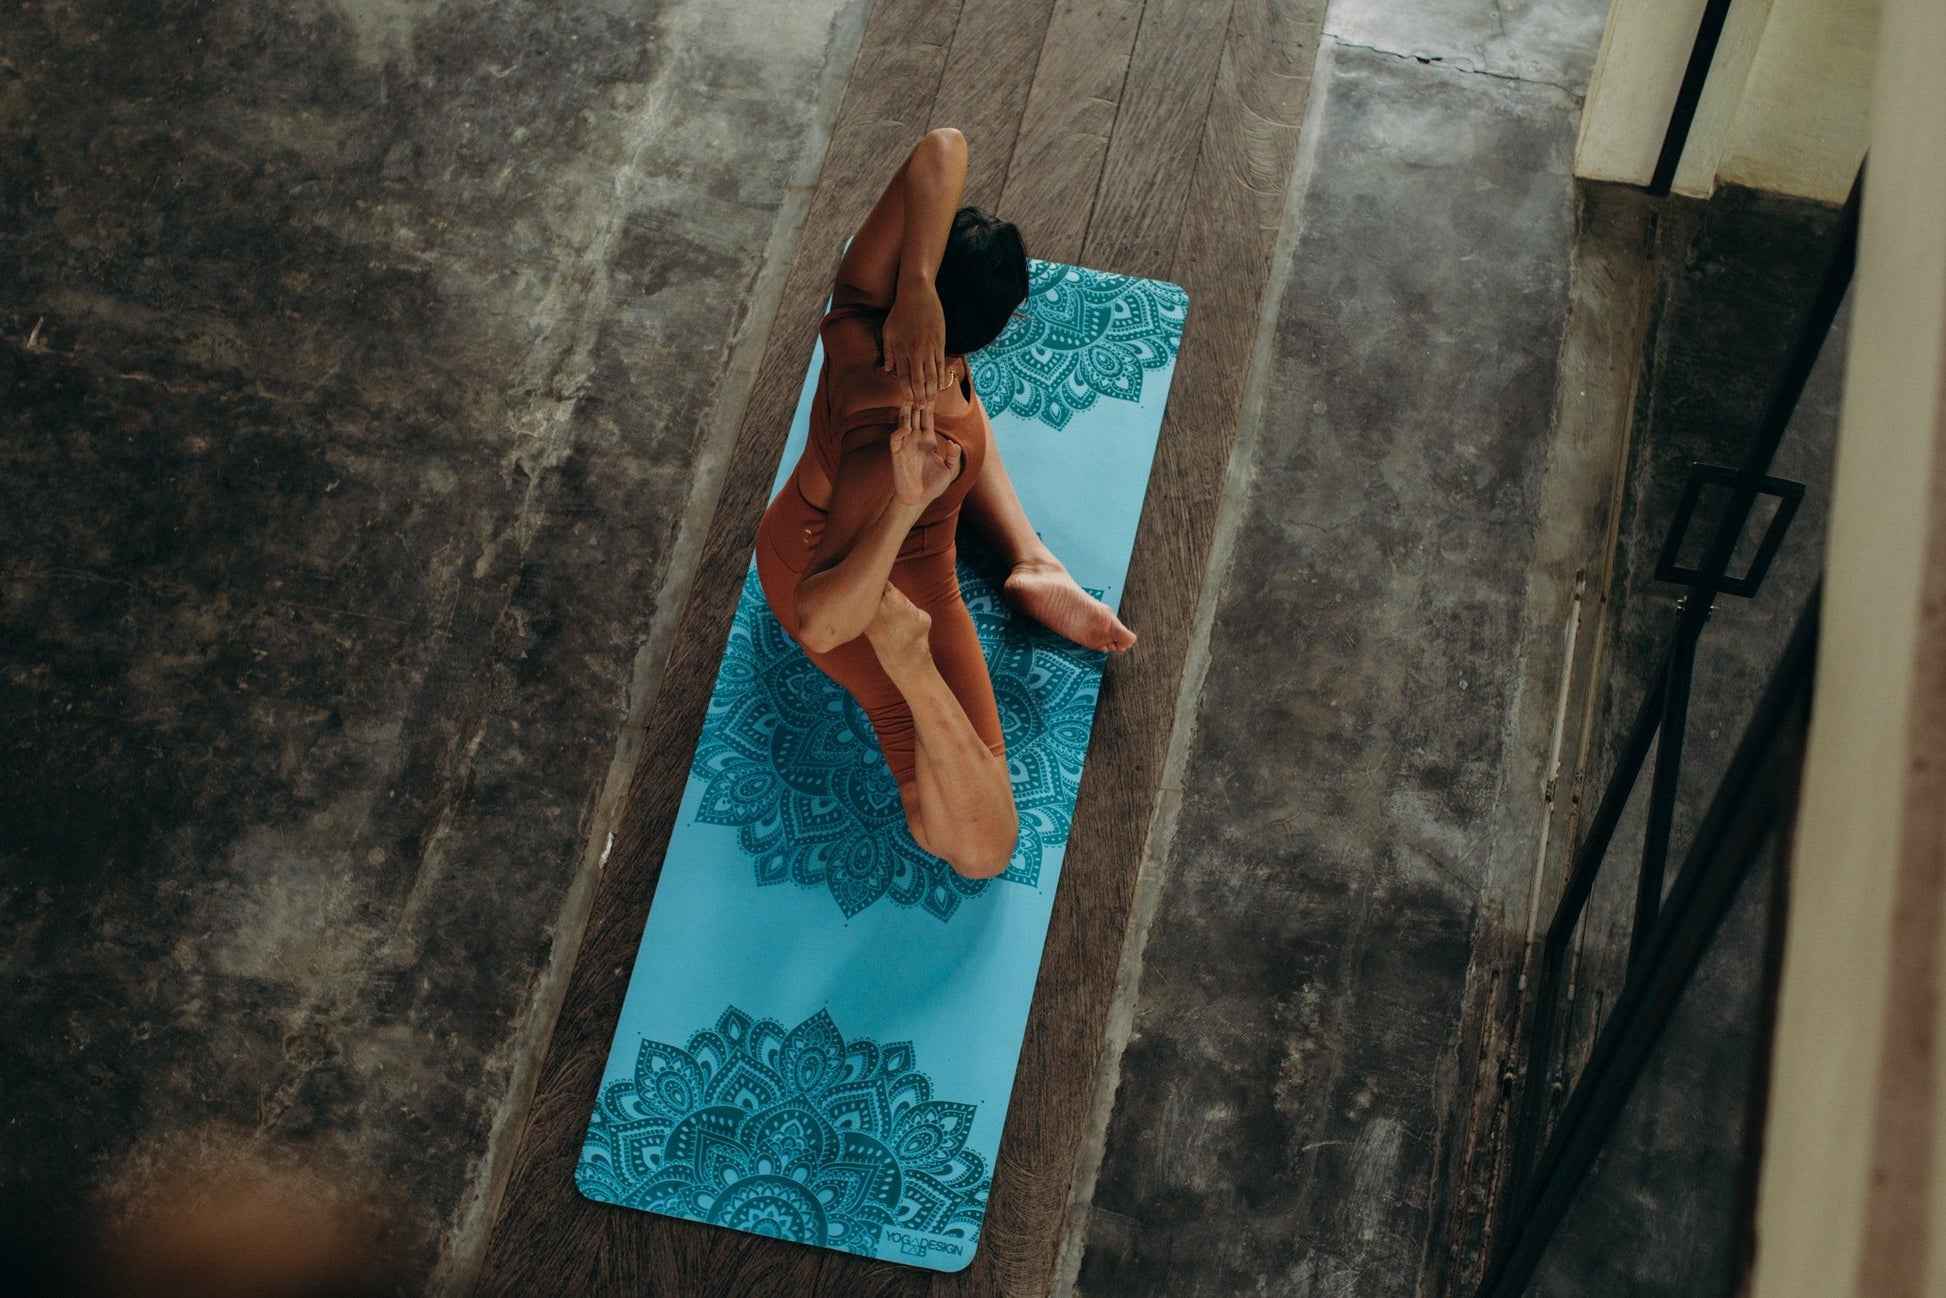 Infinity Yoga Mat 3mm Mandala Aqua - Yoga Design Lab 